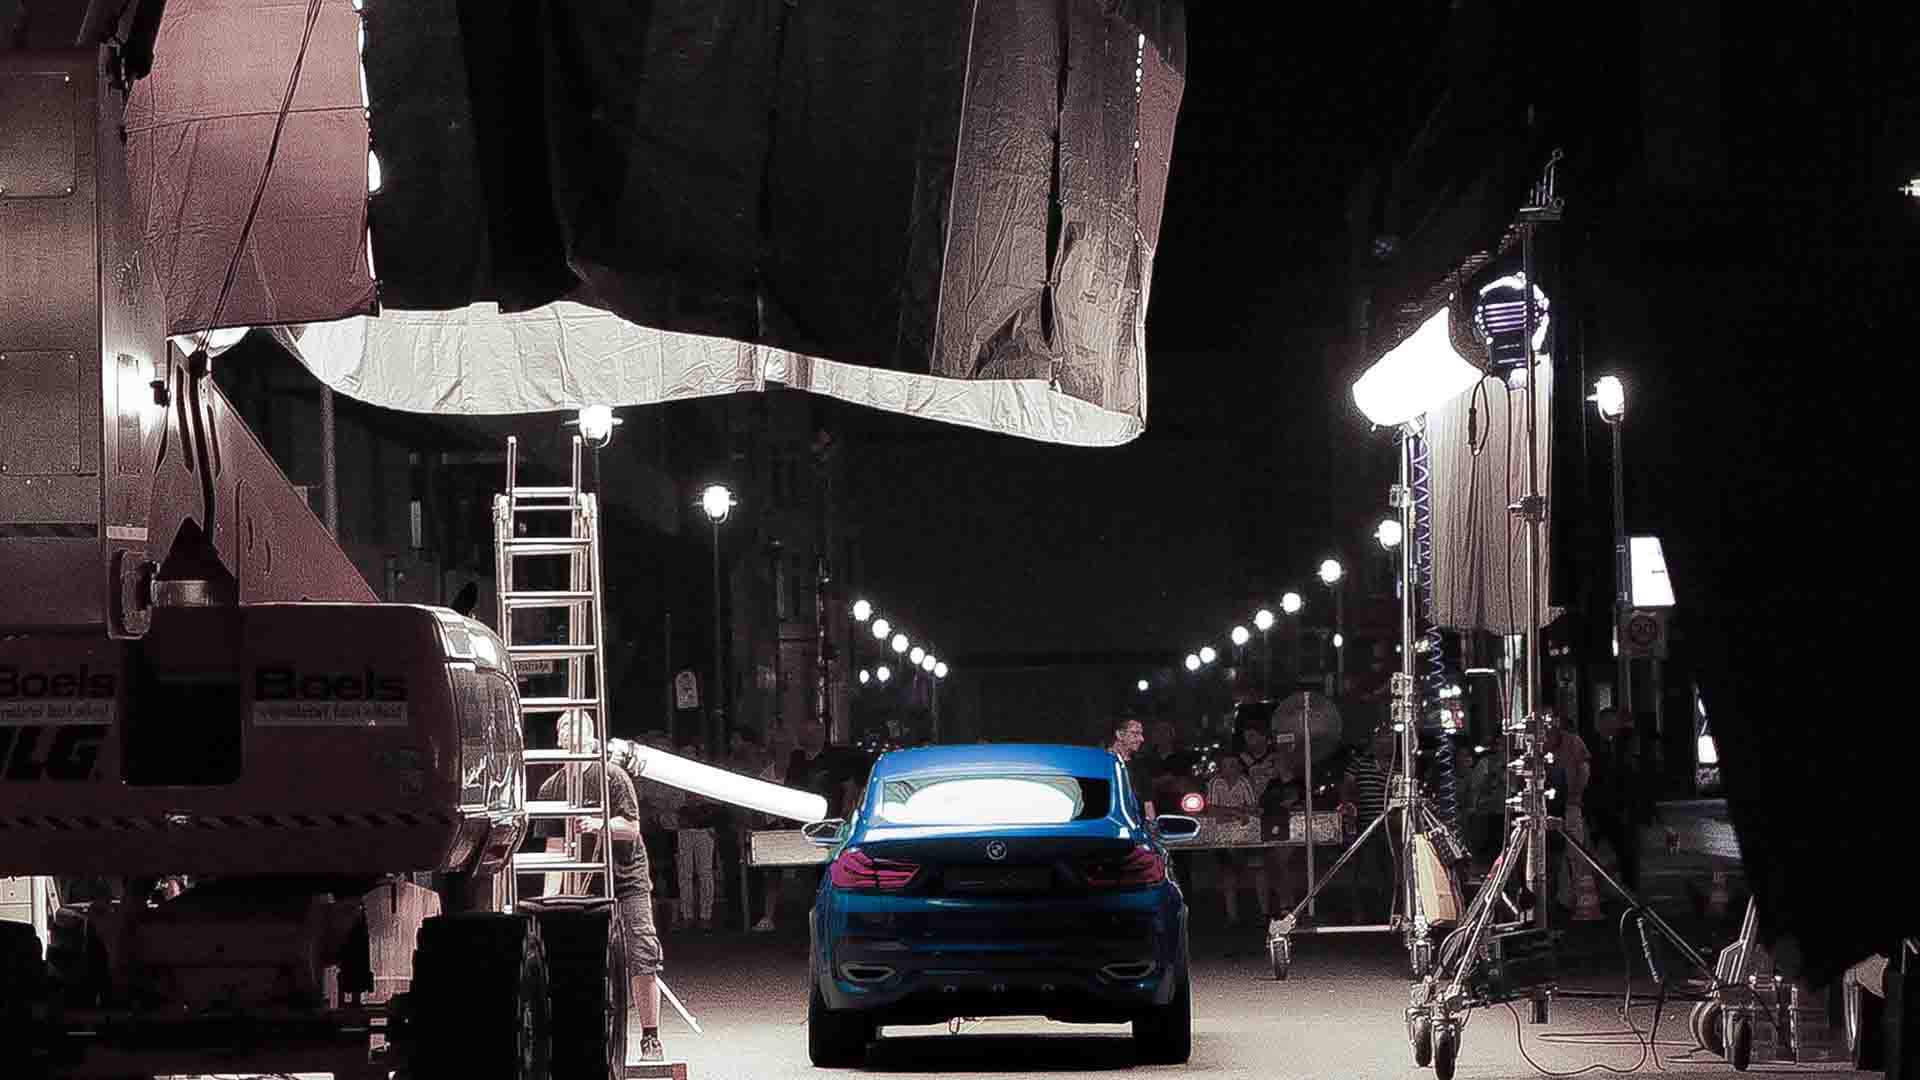 Das Bild zeigt ein parkendes Auto von hinten. Es steht in einer Halle. Es ist ein blauer BMW Concept X4. Um ihn herum stehen Lampen, Leuchten und eine Leiter. Das Bild dient als Making Of Bild für den Portfolioeintrag BMW Concept X4 von Panda Pictures.